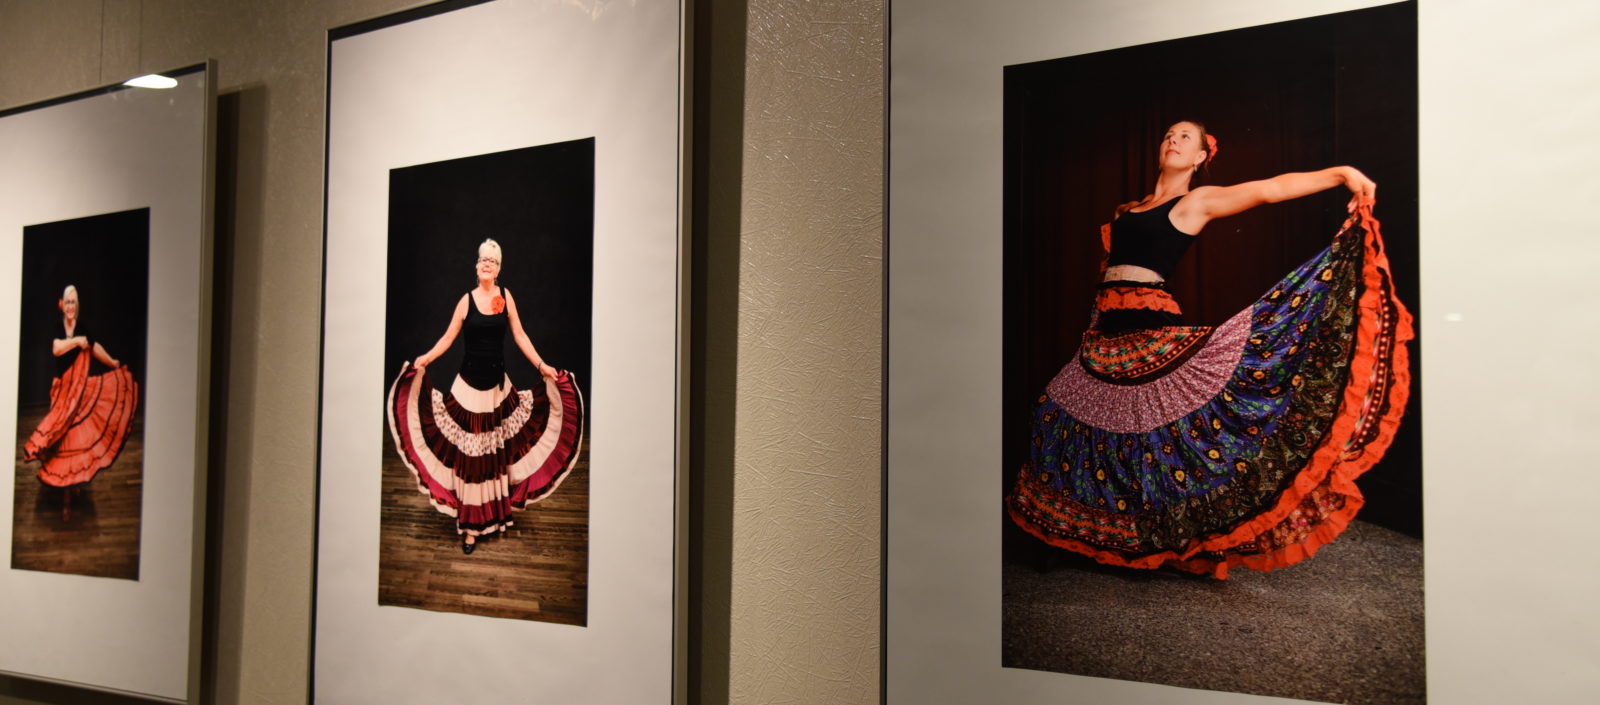 Wystawa zdjęć w Galerii Holl Sesja fotograficzna warsztatów tańca hiszpańskiego